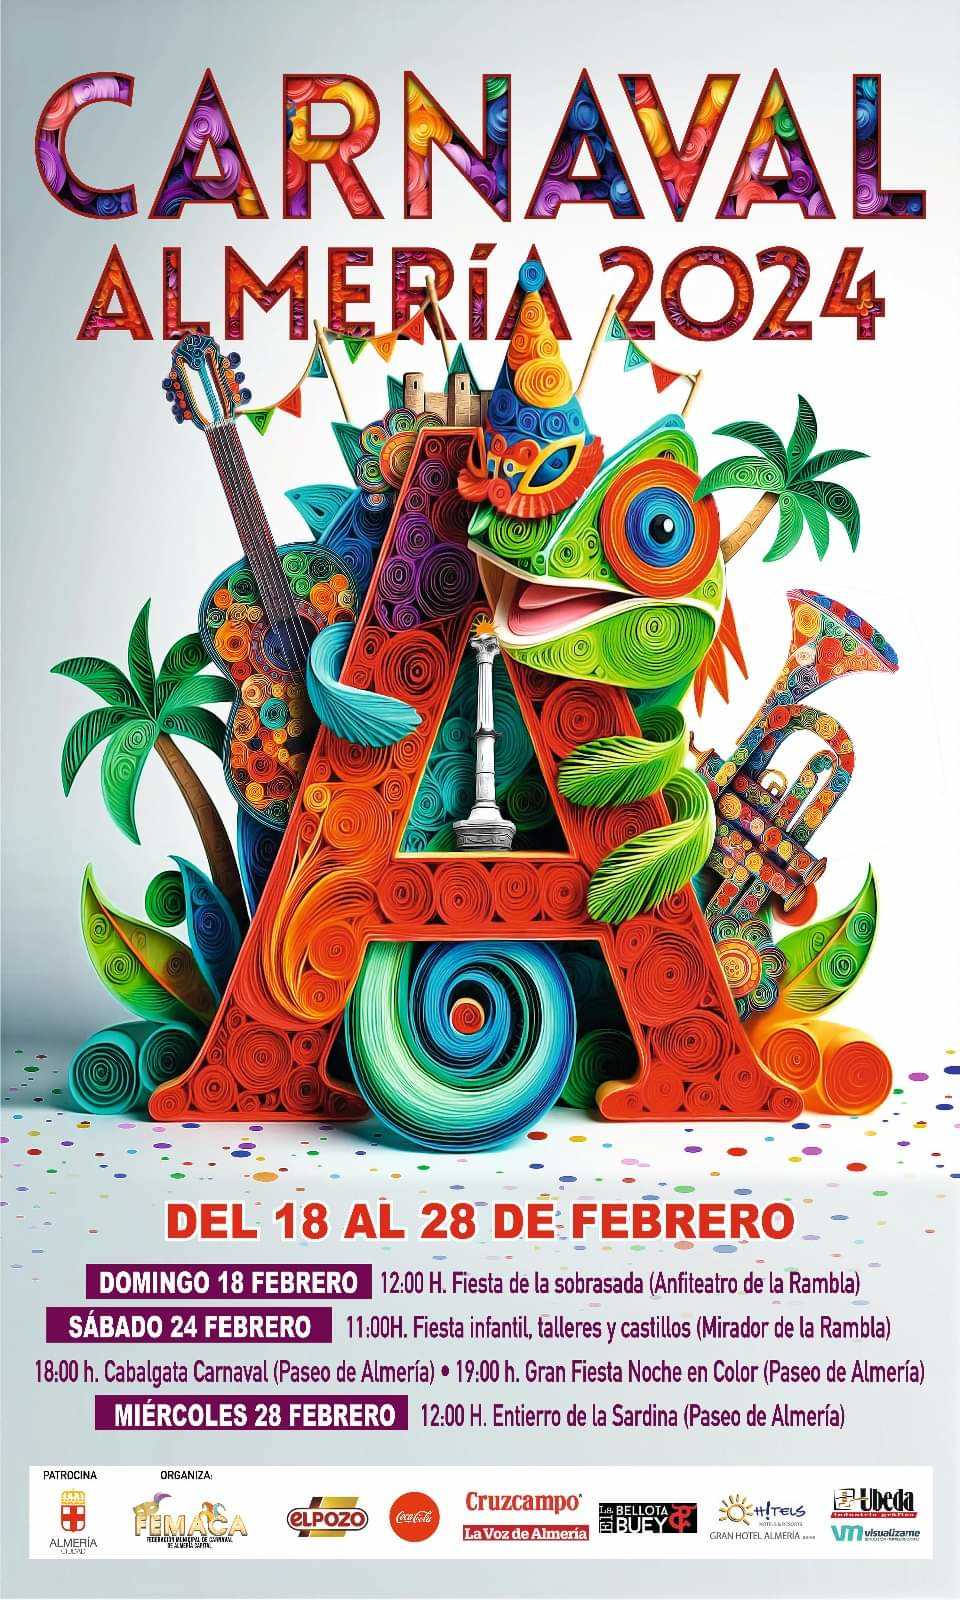 Almeria Carnival